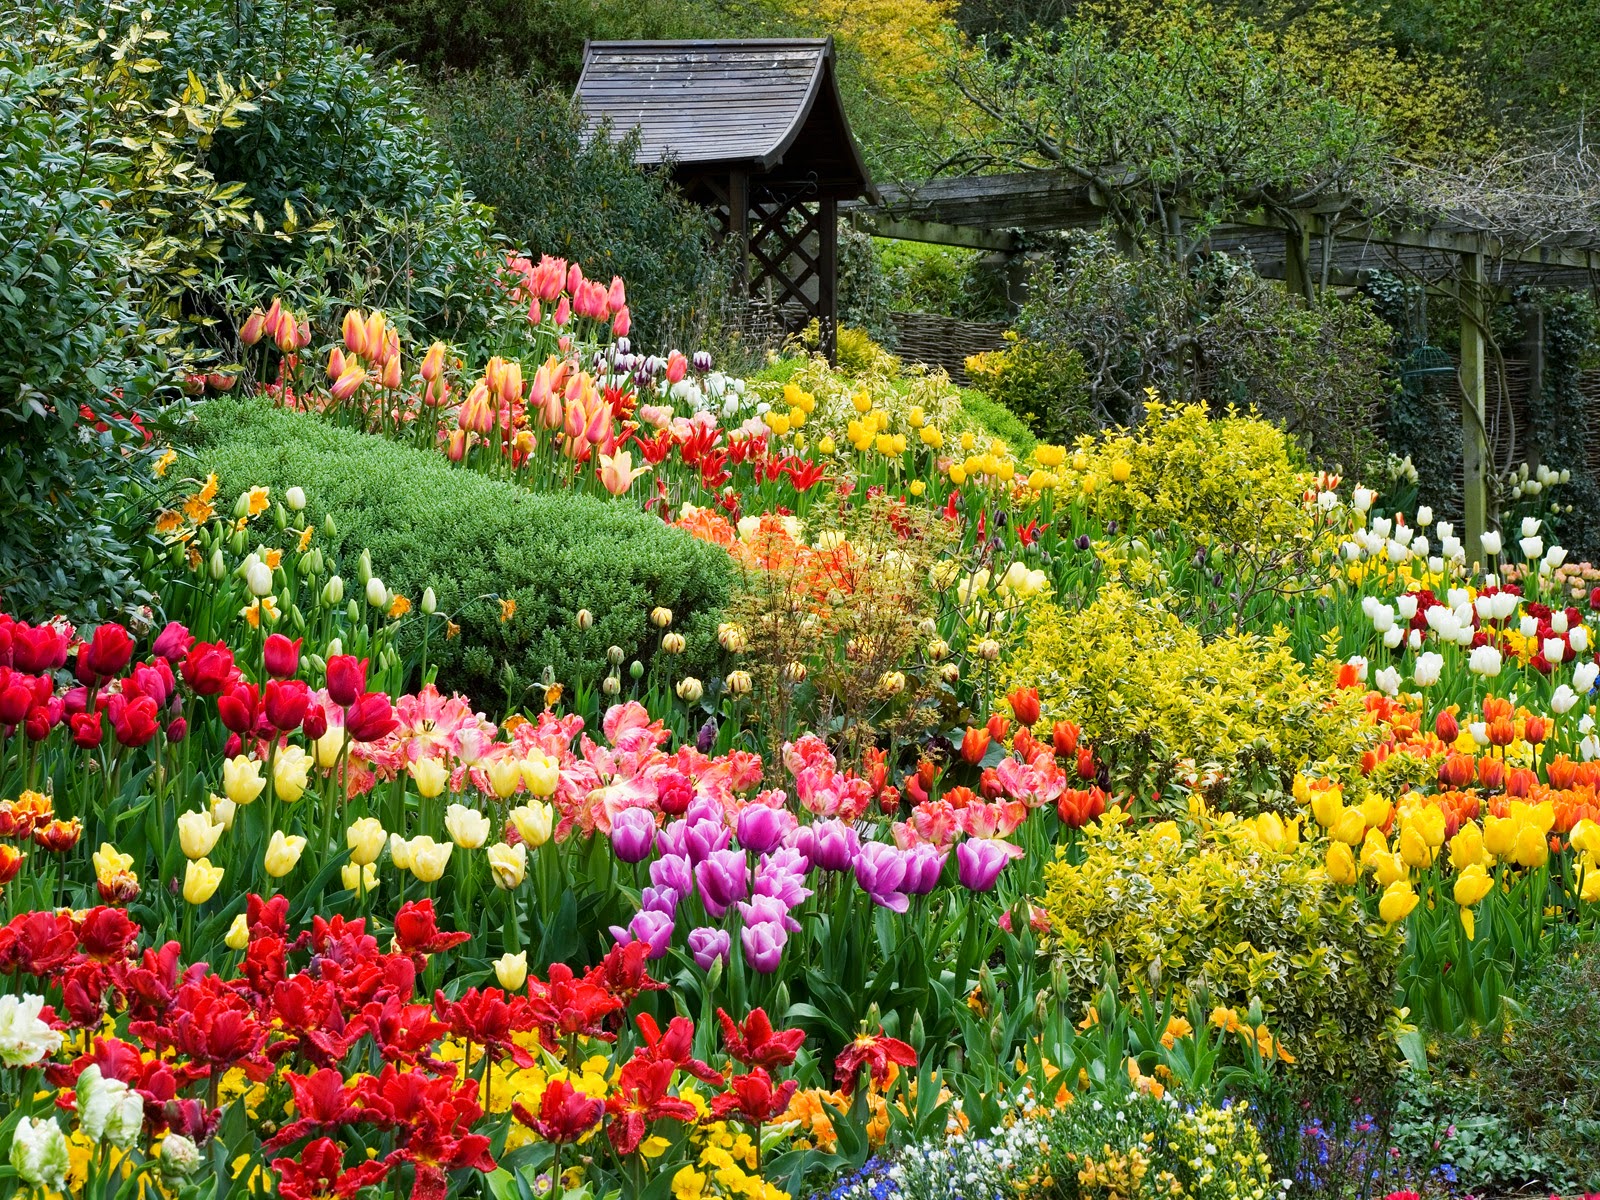 Vườn hoa: Bạn yêu thích màu sắc và mùi hương của hoa? Hãy đến vườn hoa và thỏa sức chiêm ngưỡng những bông hoa đẹp nhất. Tận hưởng không gian xanh mát, tươi mới và sống động để tâm hồn luôn sáng tạo, tươi trẻ!